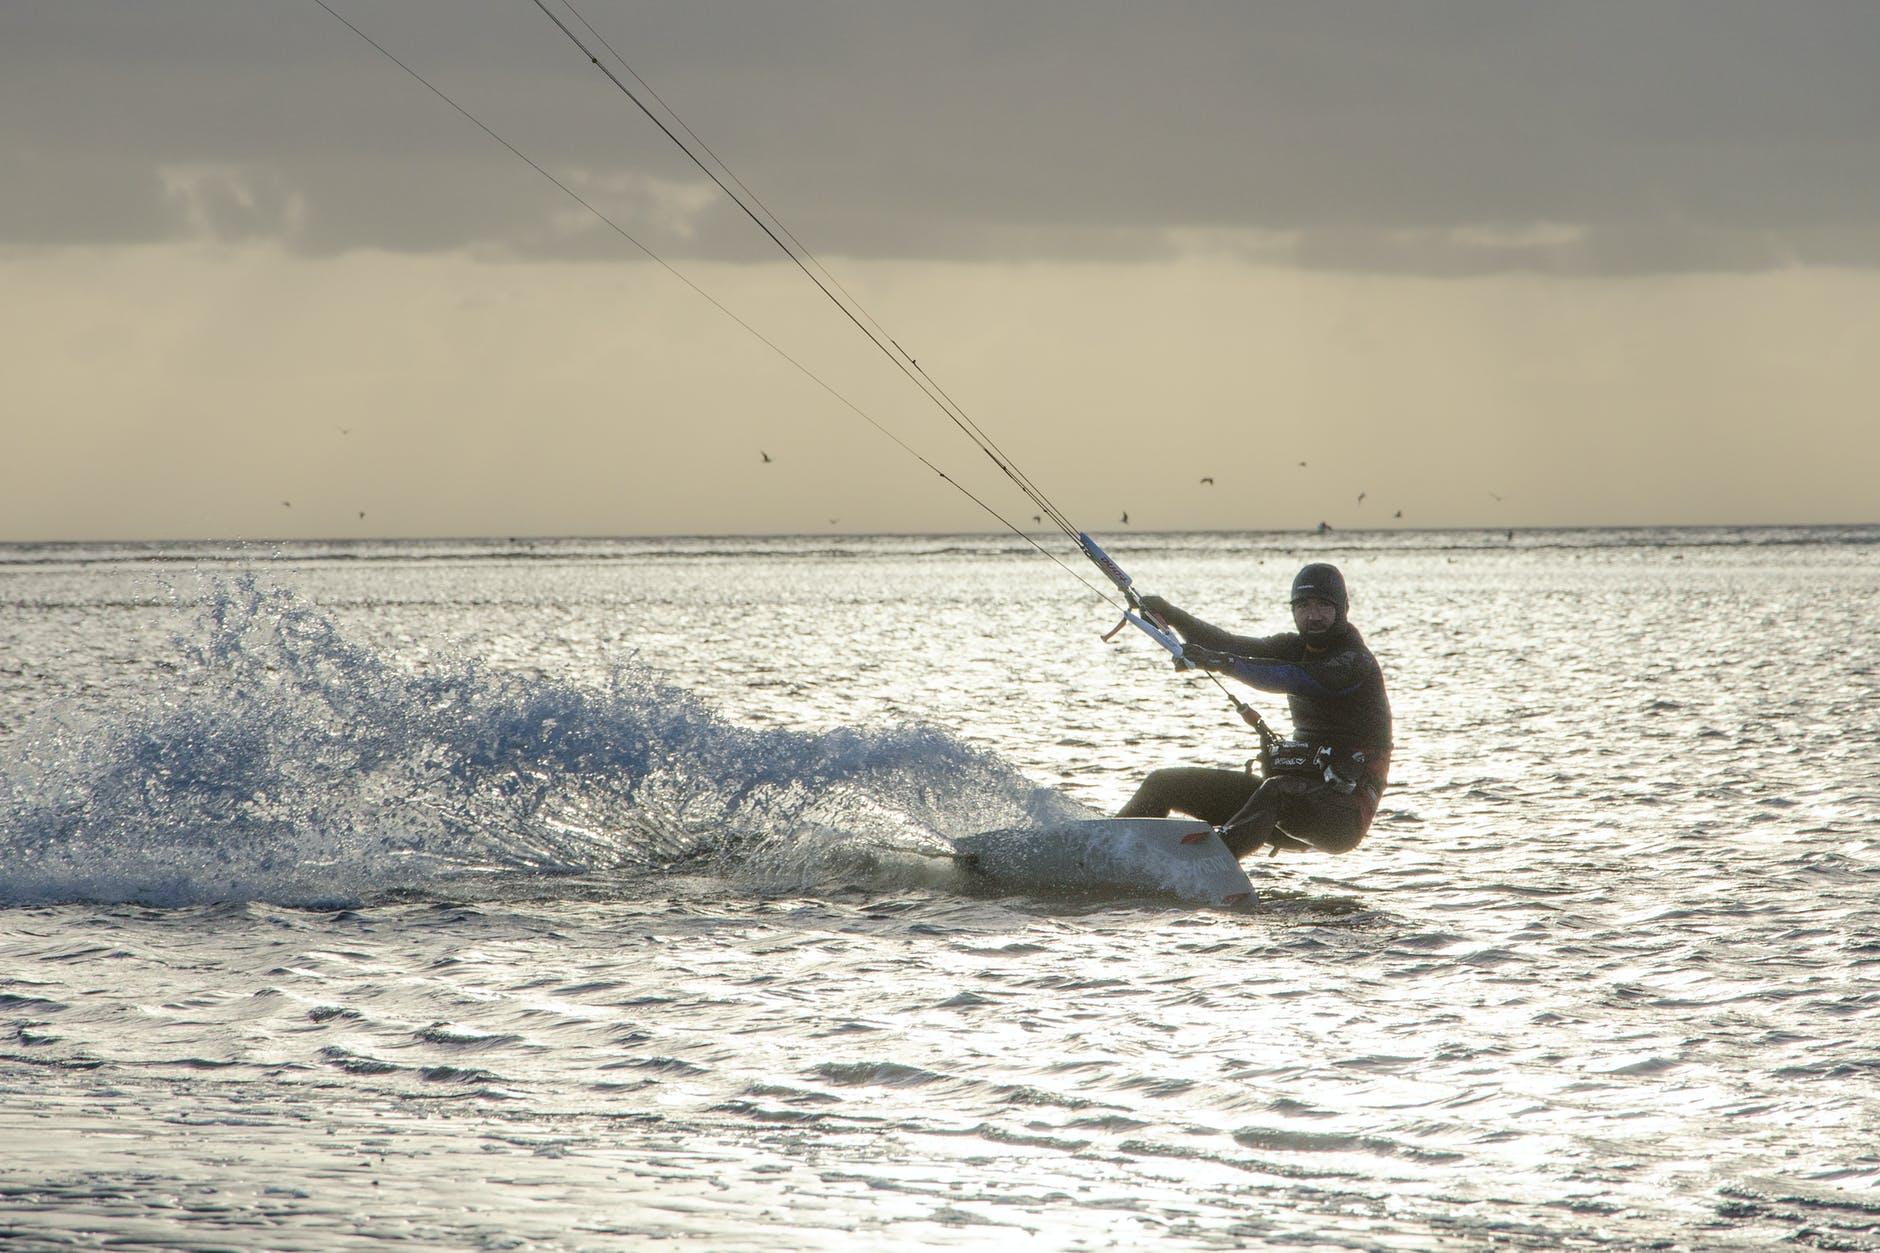 A man enjoying kite surfing